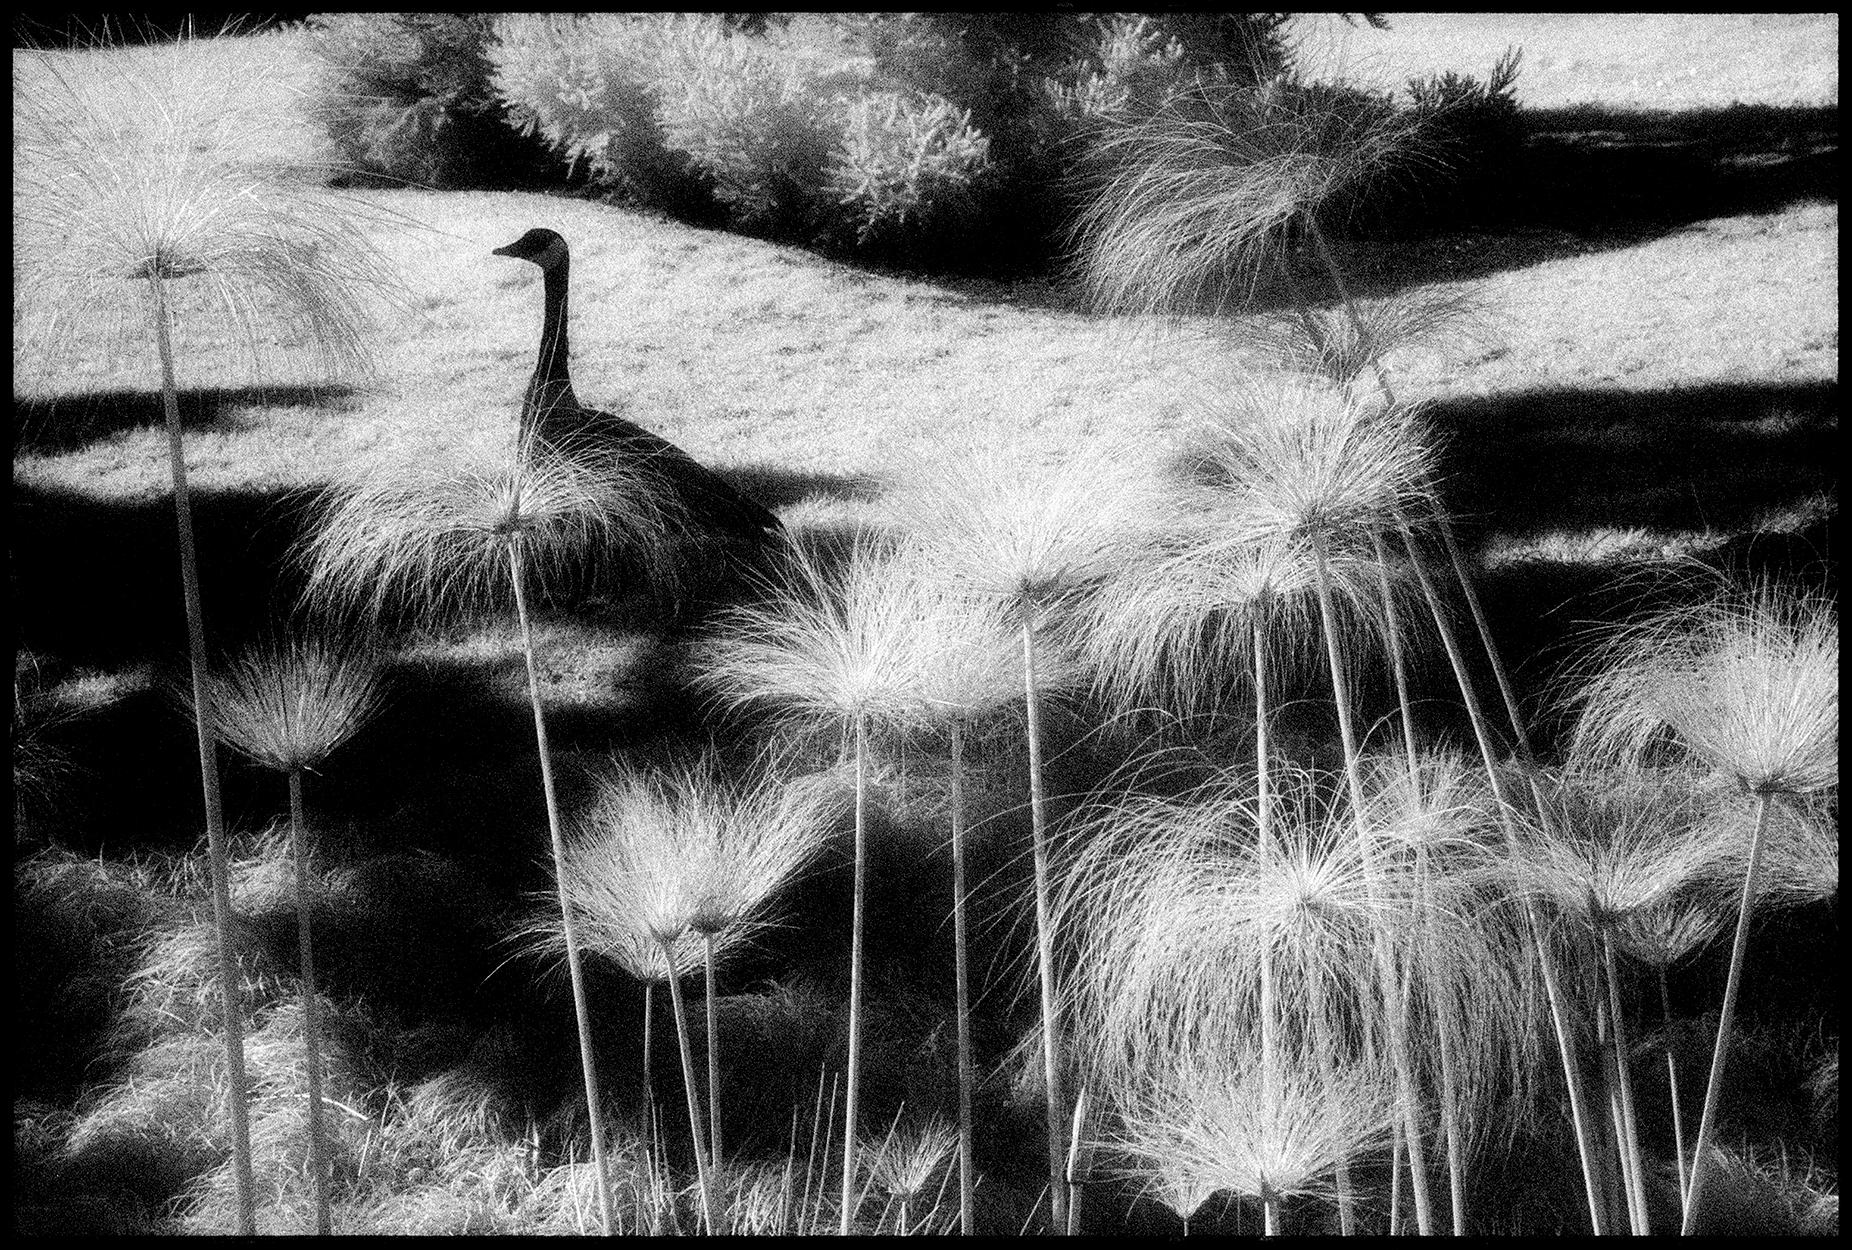 Landscape Photograph Edward Alfano - Huntington Gardens XXXII - Photographie de paysage en noir et blanc avec oiseau